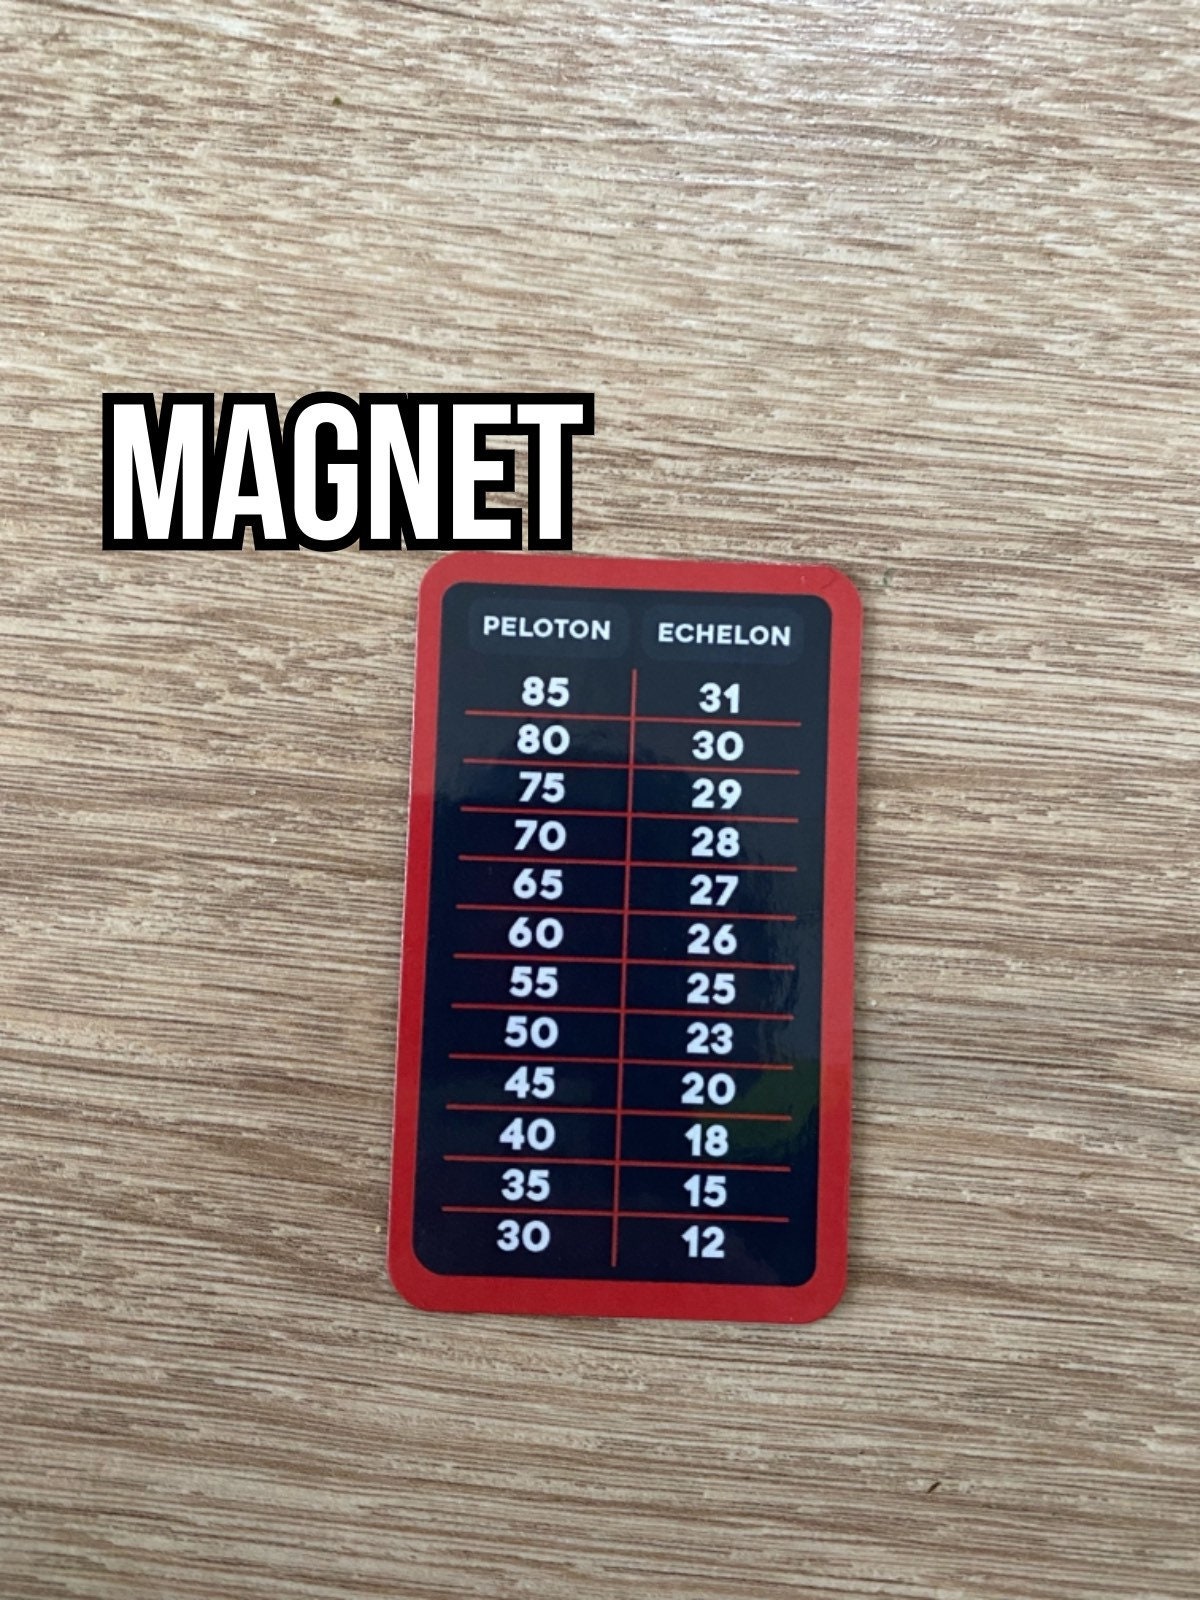 Magnet peloton echelon for sale  